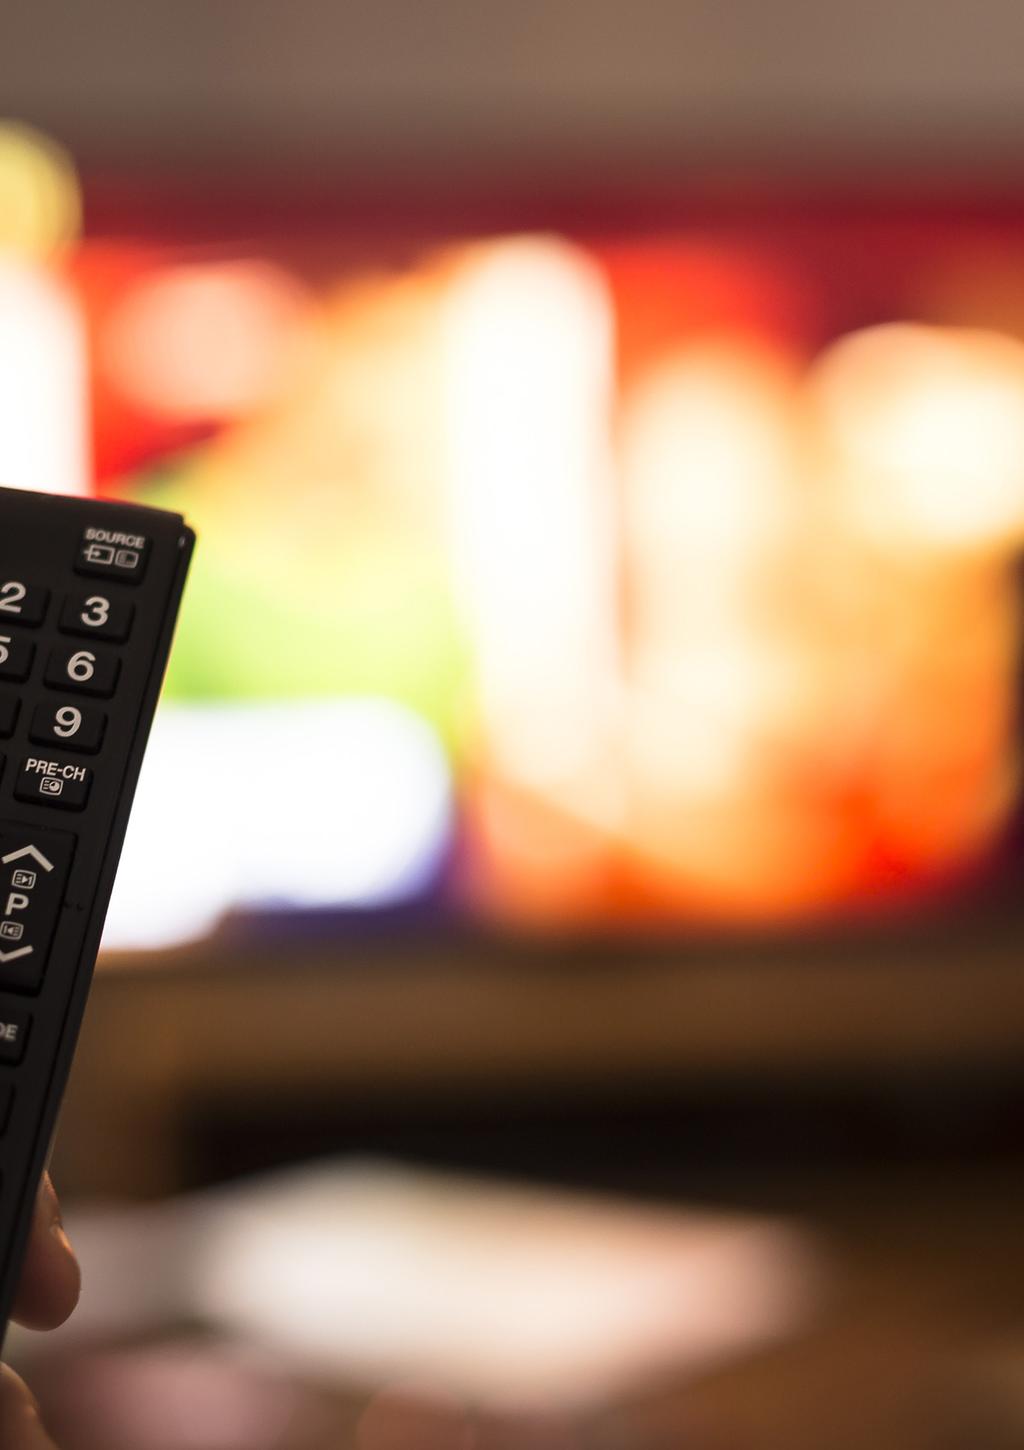 ONNITTELUT IPTV:N VALINNASTA IPTV-palvelumme avulla saat interaktiivisen tv-sovelluksen, jolla voit katsoa televisiota, tallentaa ohjelmia, vuokrata elokuvia, tauottaa